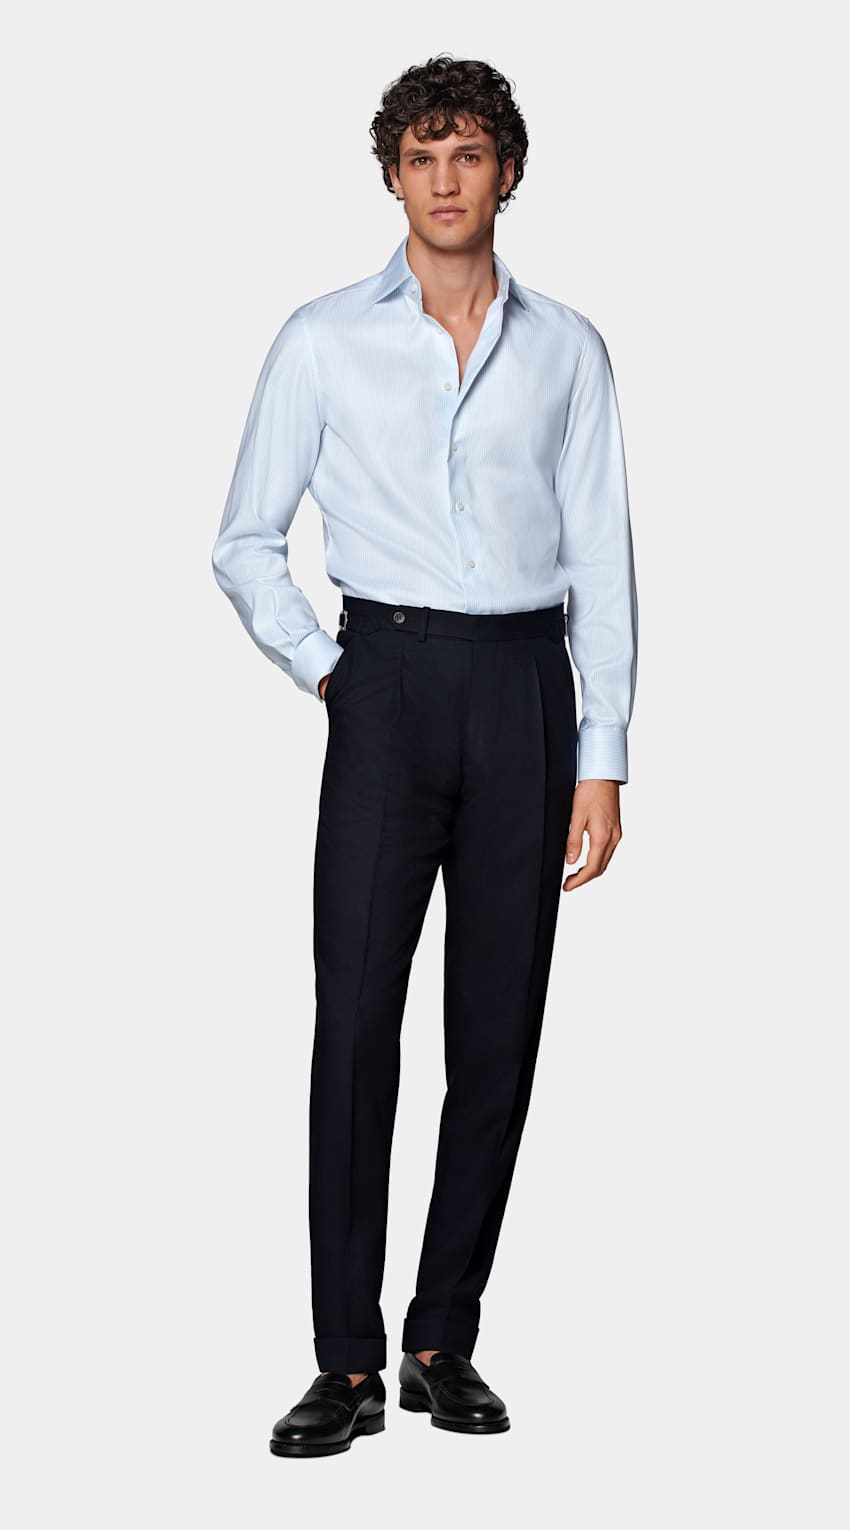 SUITSUPPLY Cotone Traveller Pima - Weba, Svizzera Camicia Oxford azzurra a righe tailored fit